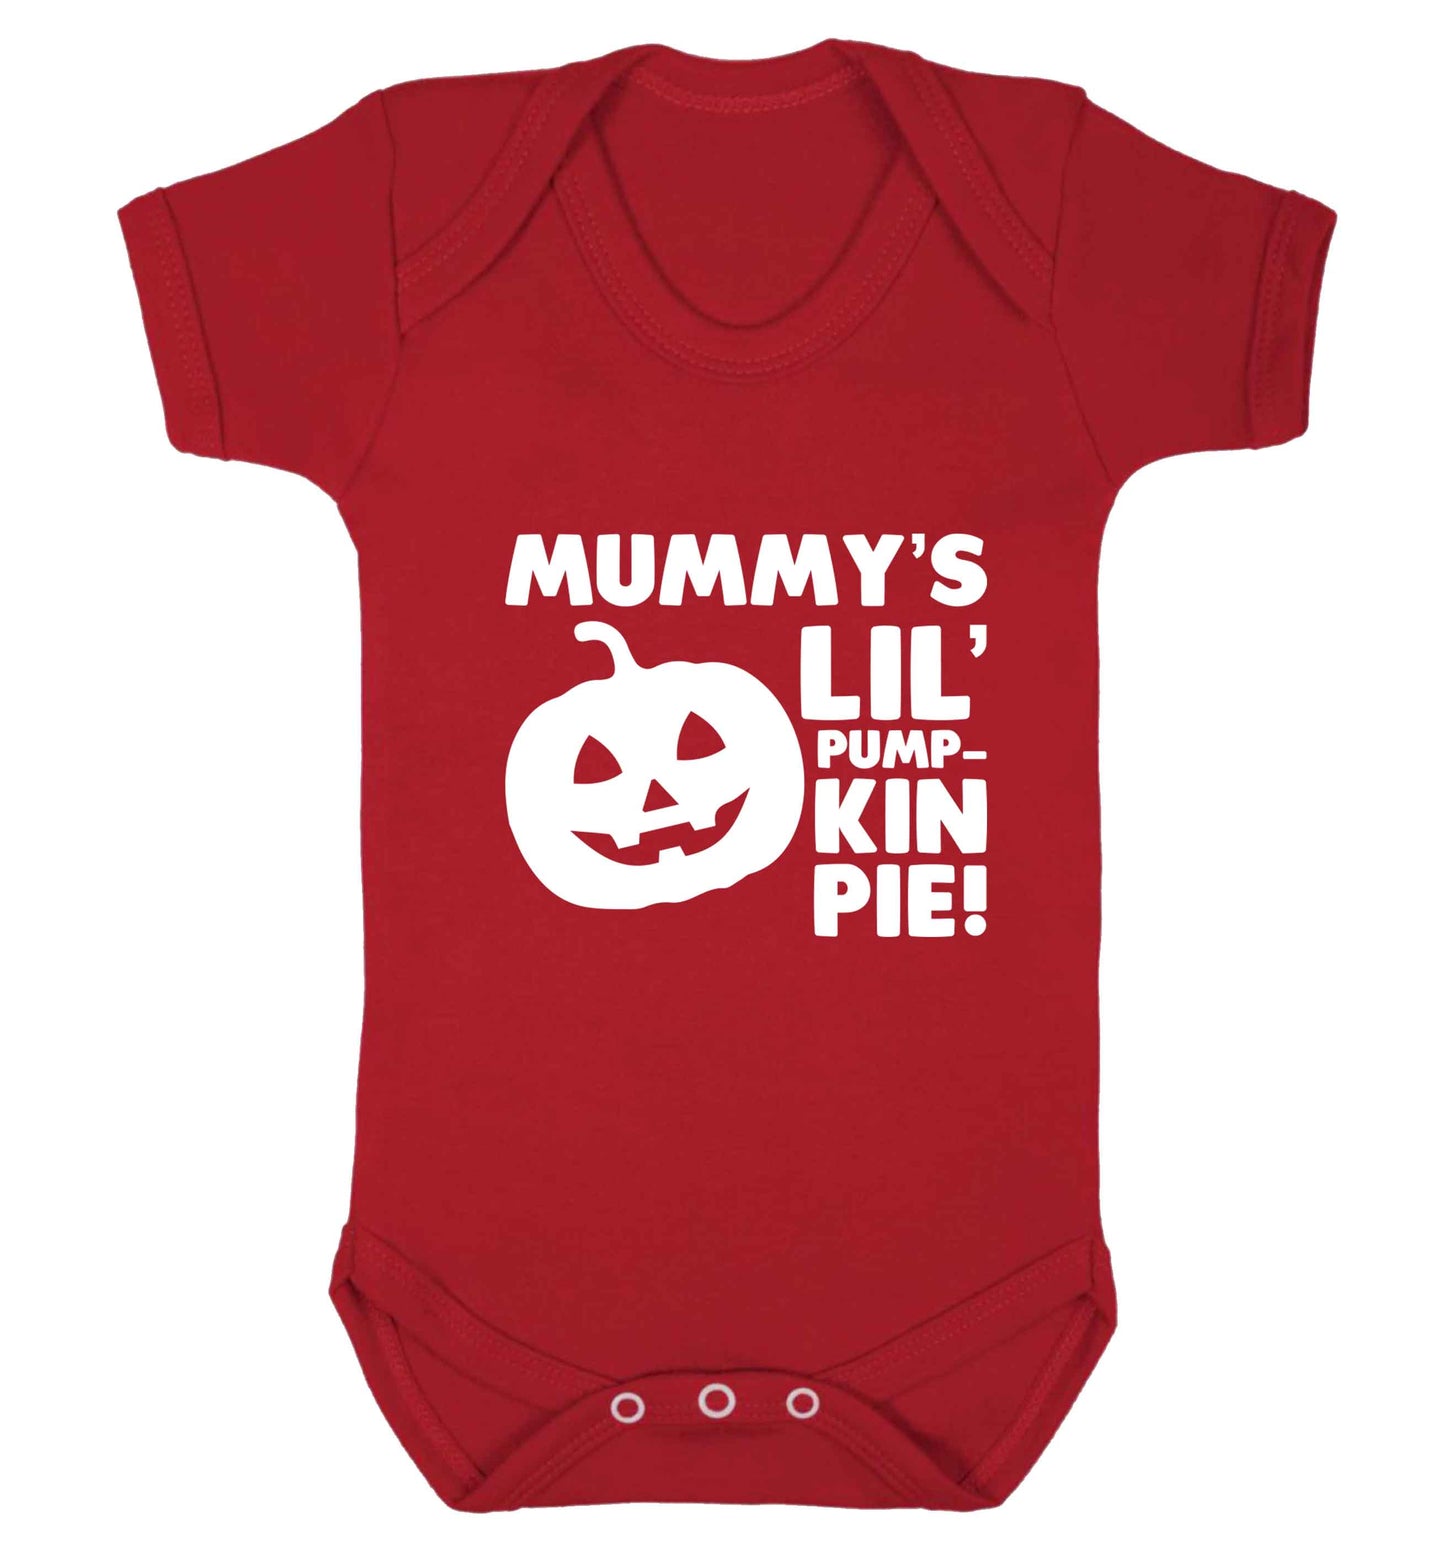 Mummy's lil' pumpkin pie baby vest red 18-24 months